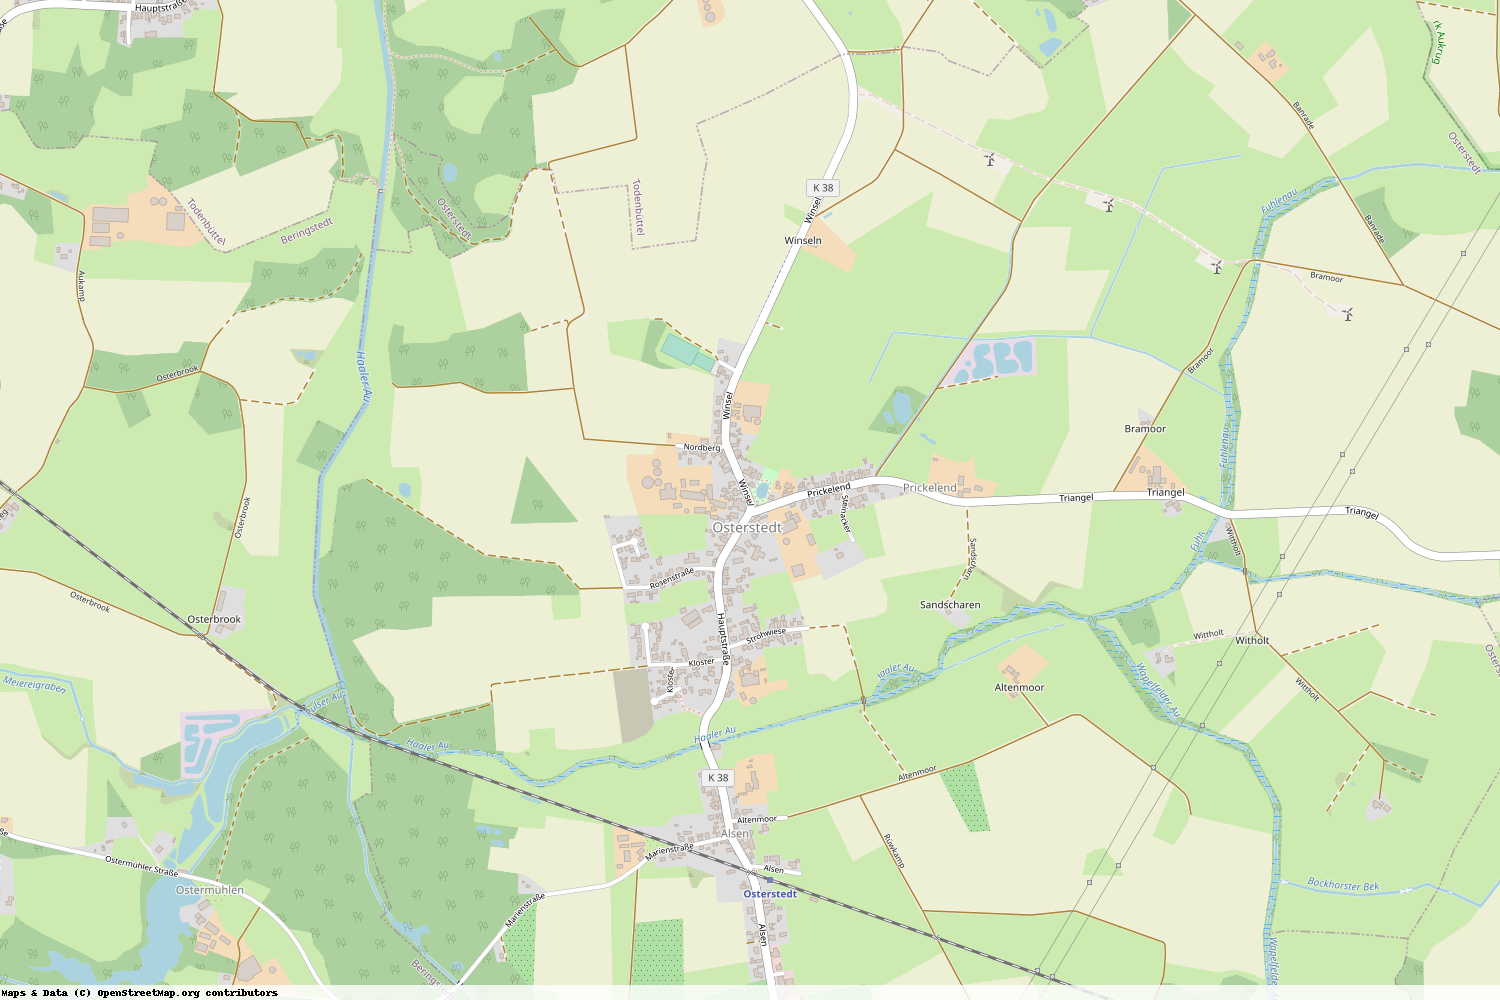 Ist gerade Stromausfall in Schleswig-Holstein - Rendsburg-Eckernförde - Osterstedt?